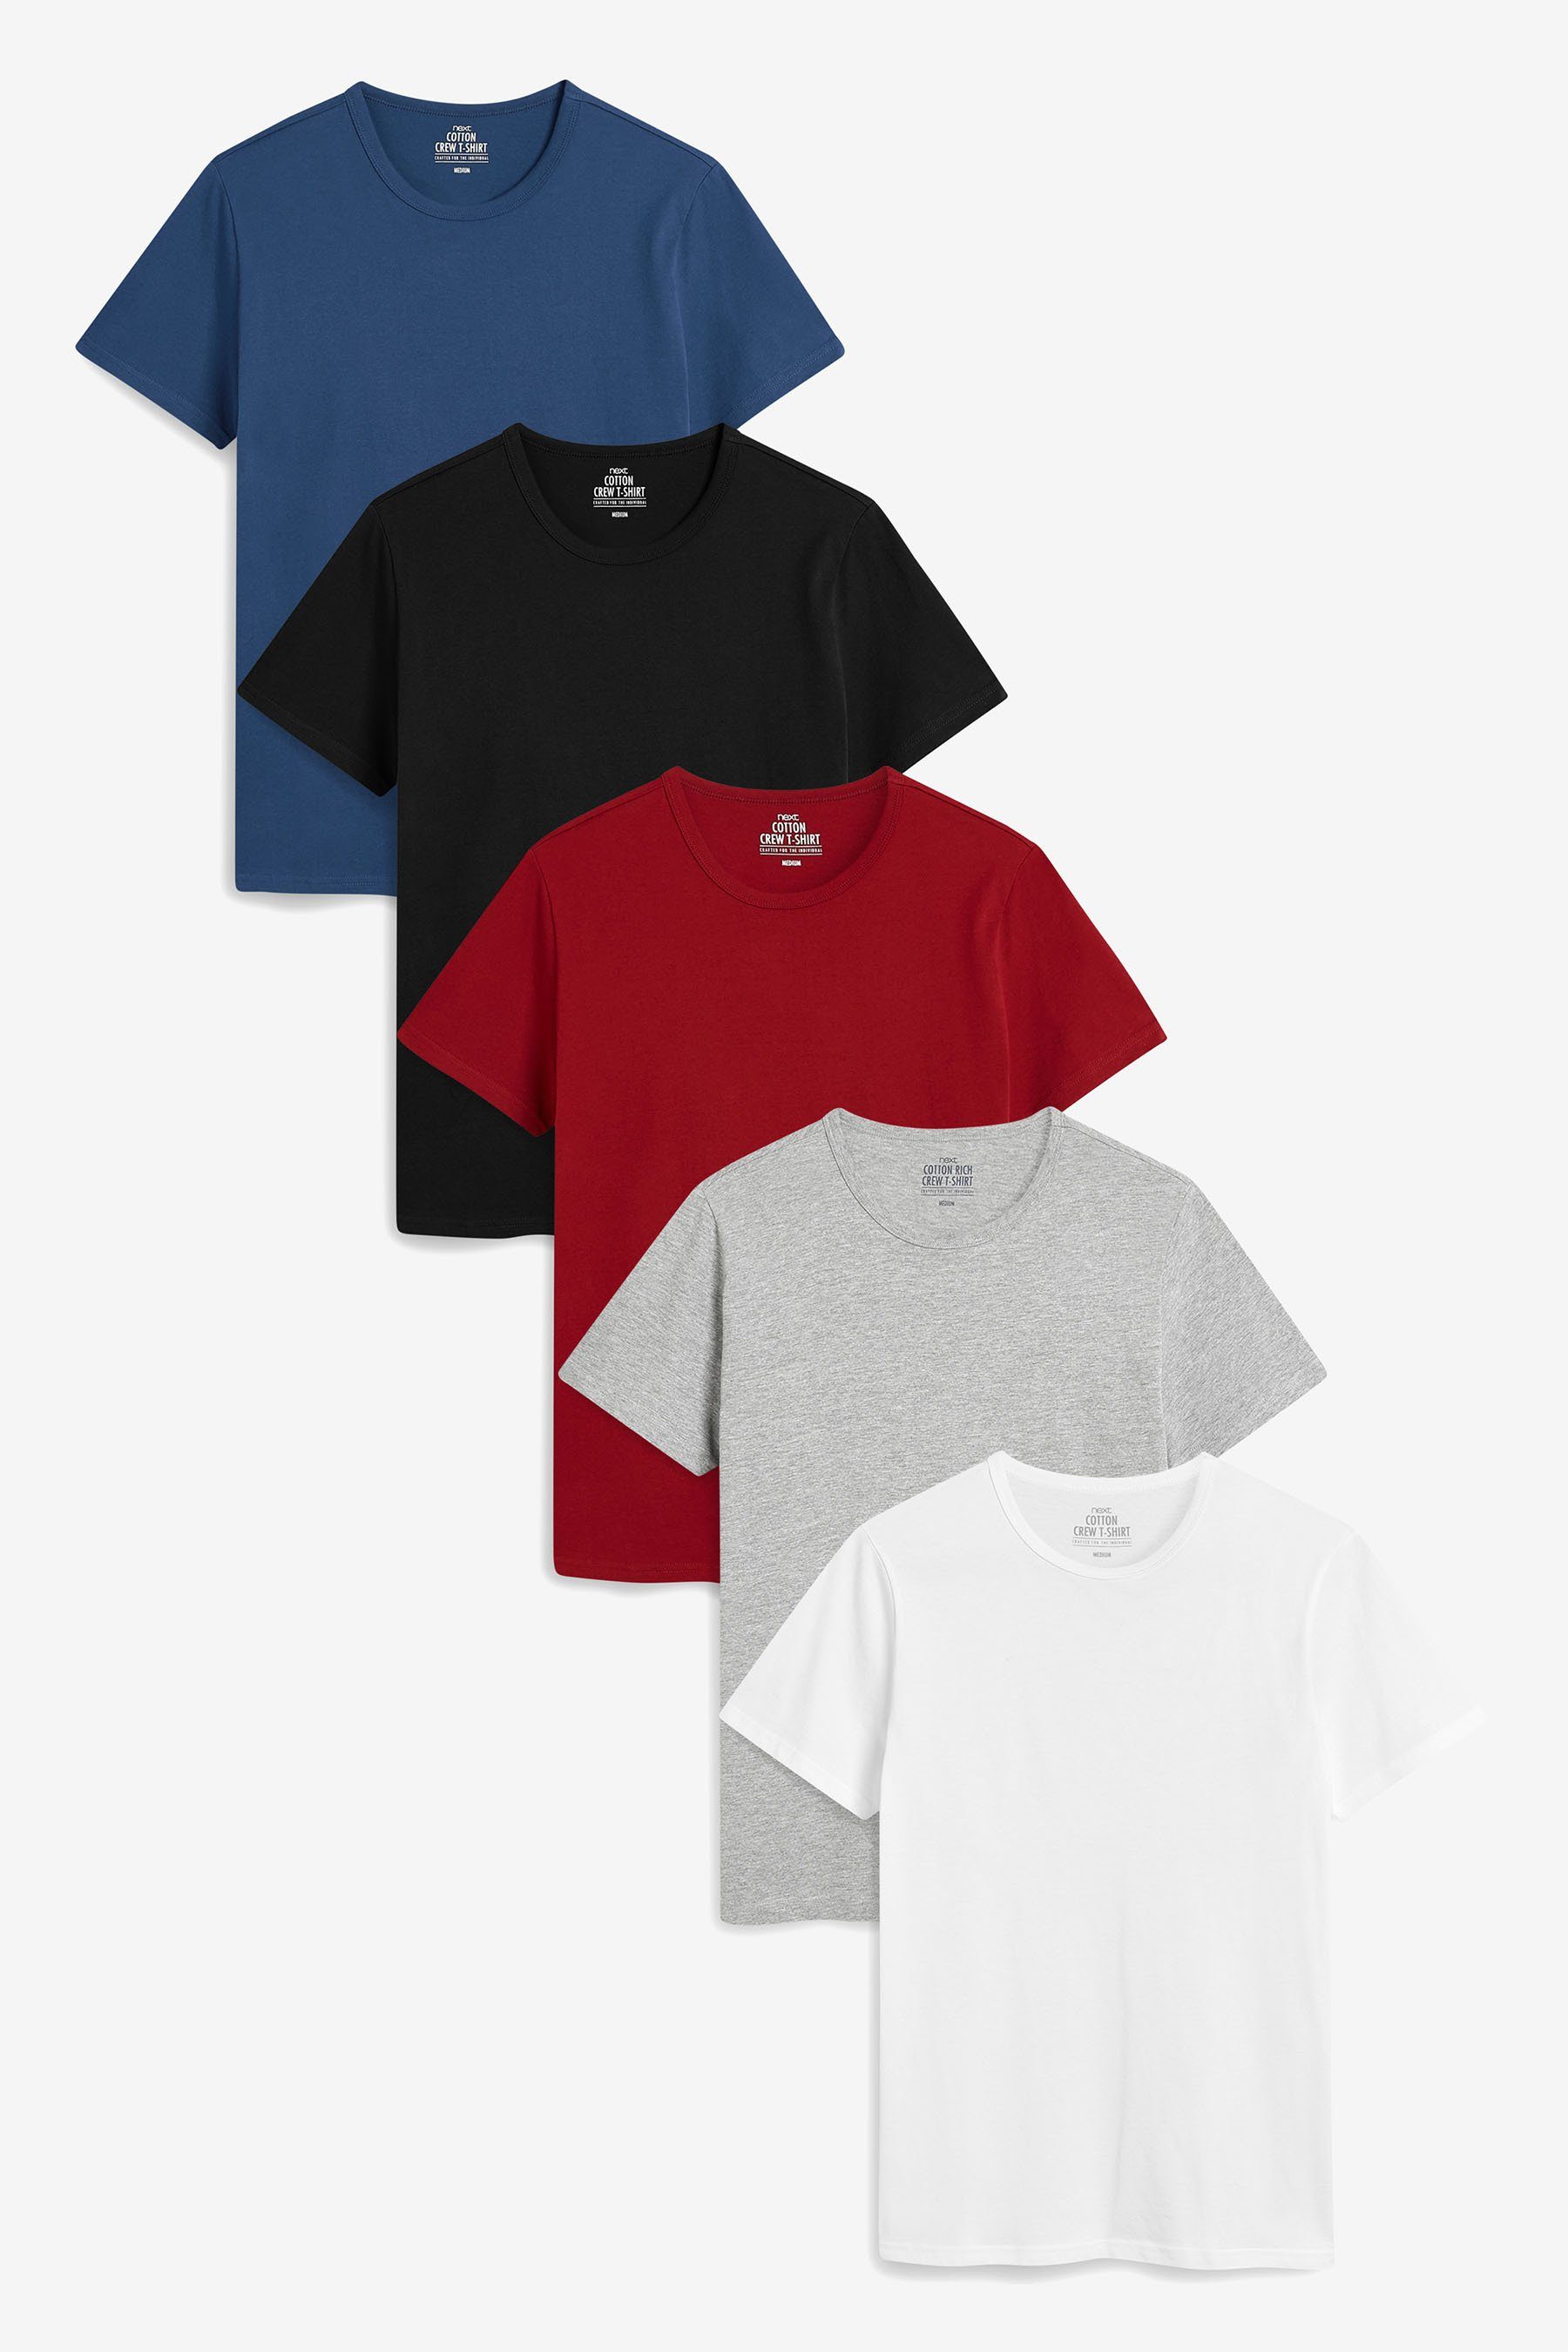 Next Unterhemd 5er-Pack T-Shirts (5-St)